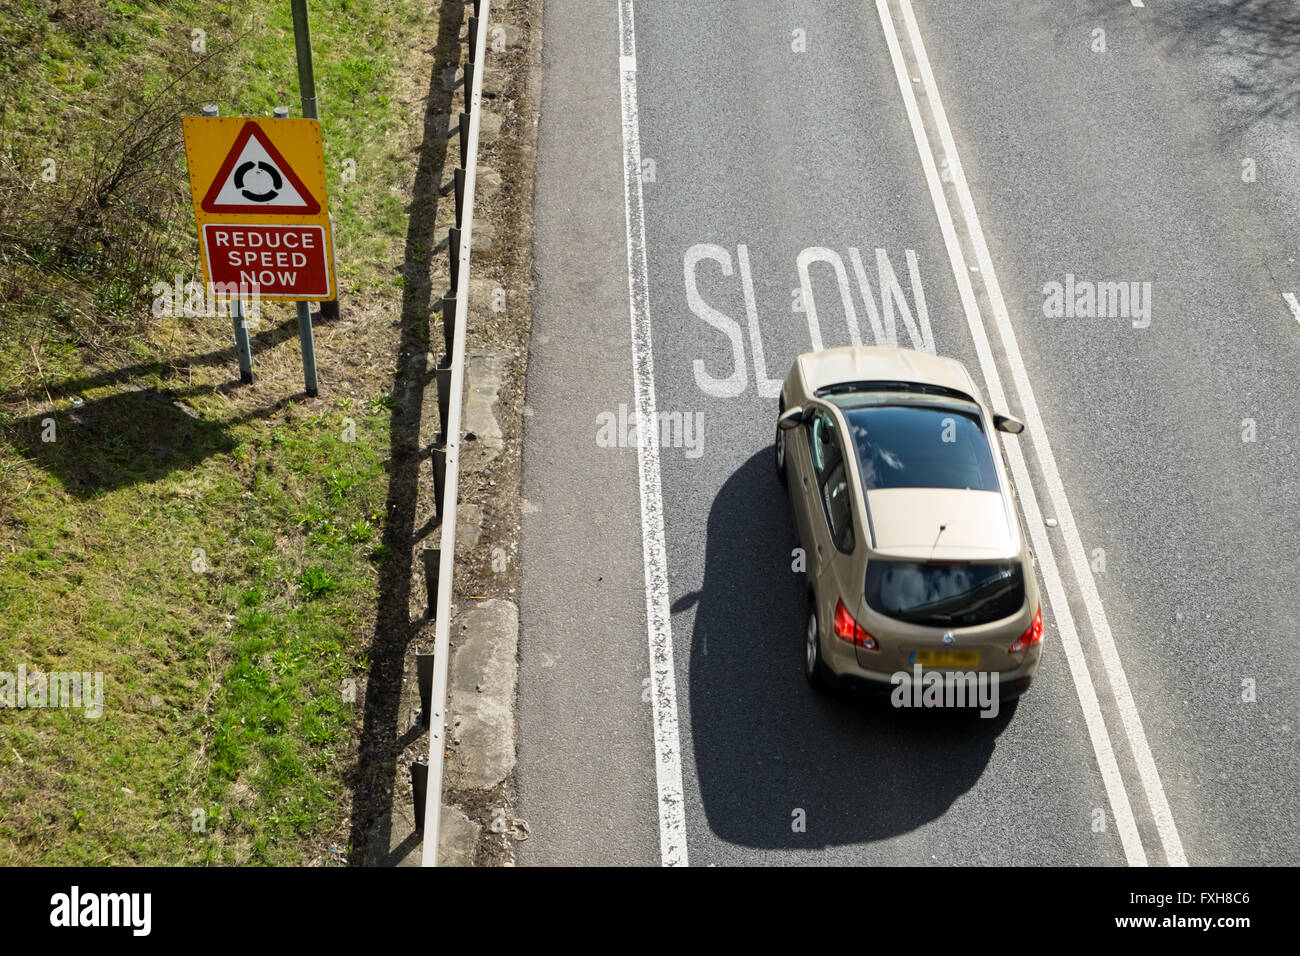 Car braking at warning to slow down on UK road Stock Photo